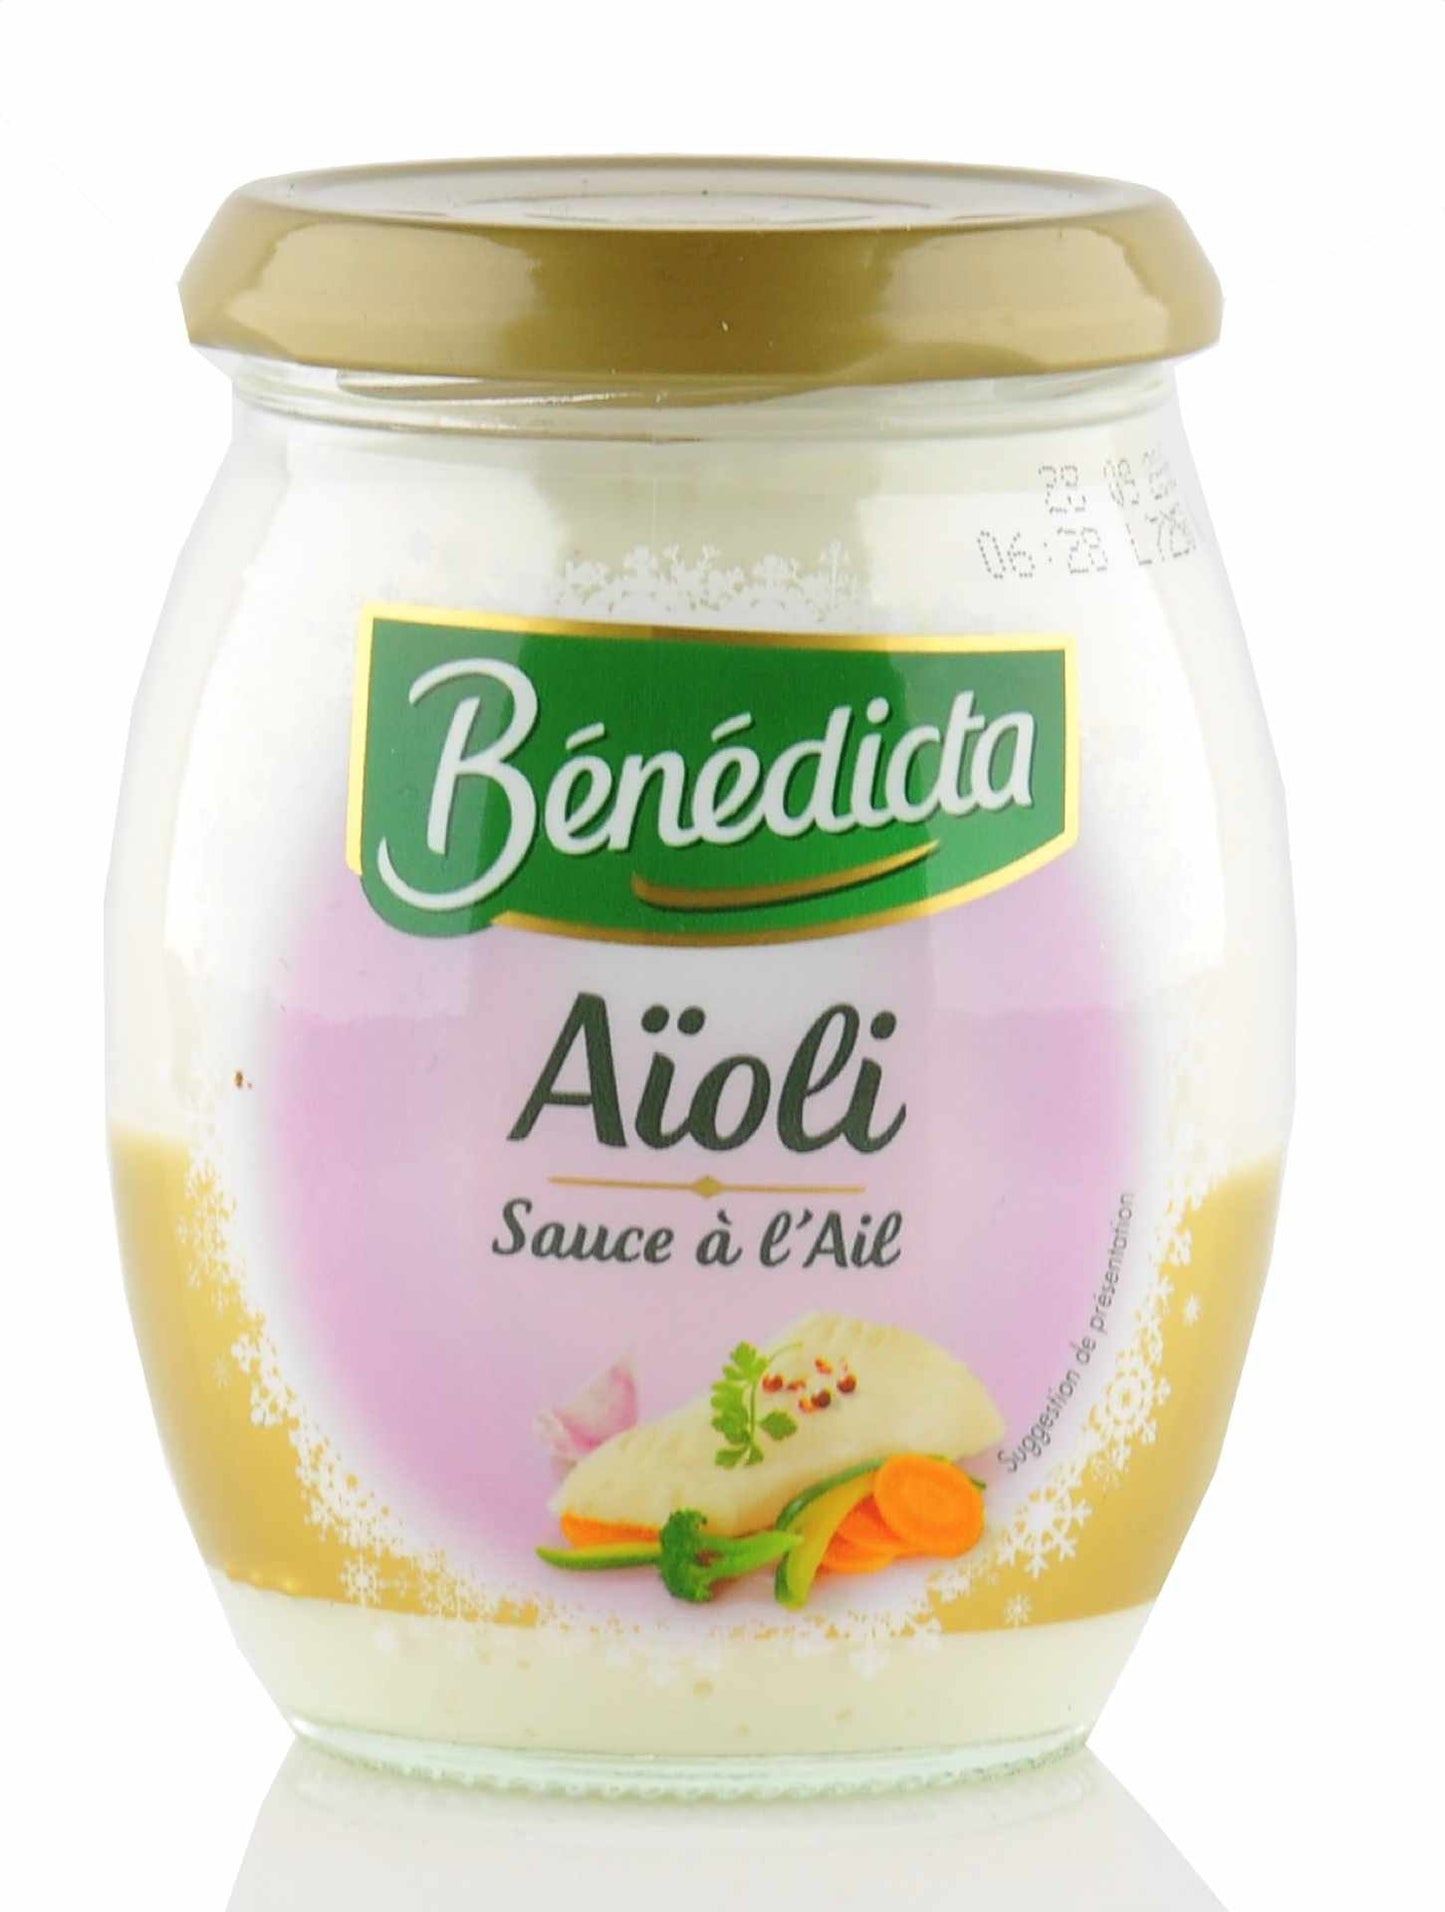 Benedicta "Aioli" Knoblauch Sauce im 260g Glas